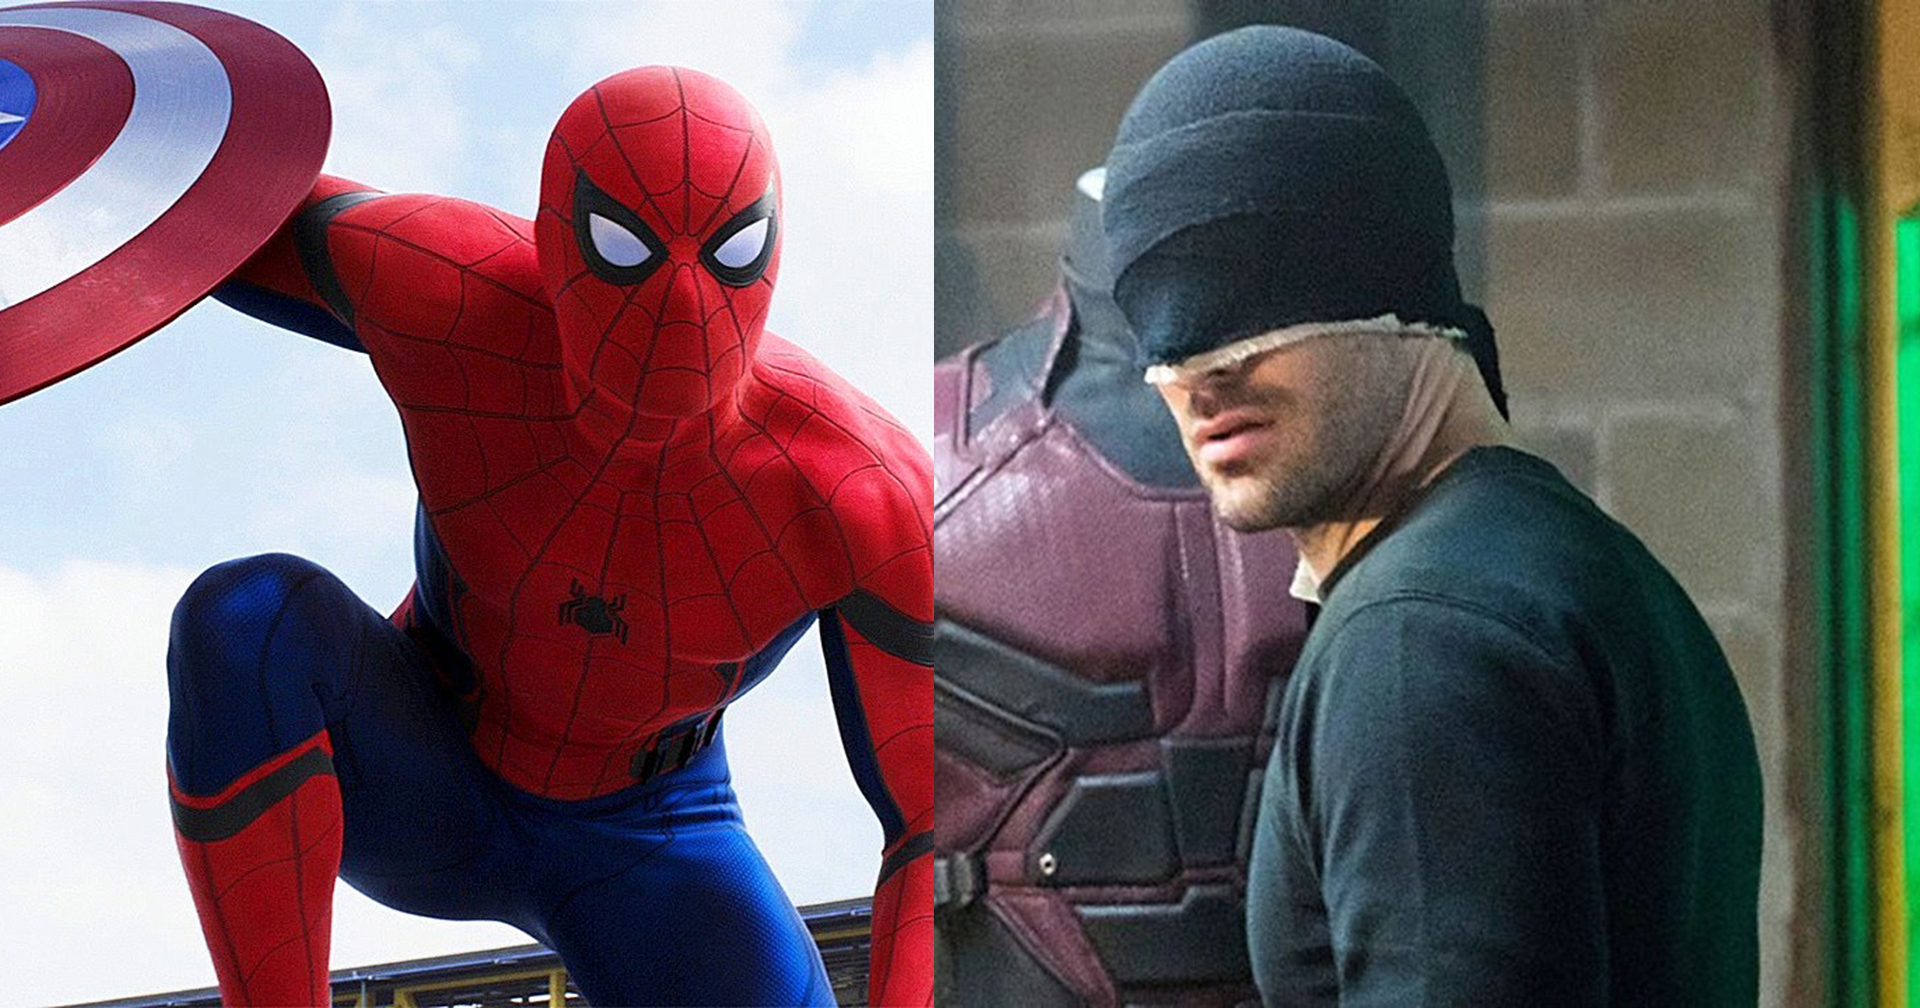 เควิน ไฟกี ยืนยัน ‘Spider-Man’ และ ‘Daredevil’ จะเป็นผู้นำกลุ่มฮีโรบนท้องถนนในจักรวาล MCU